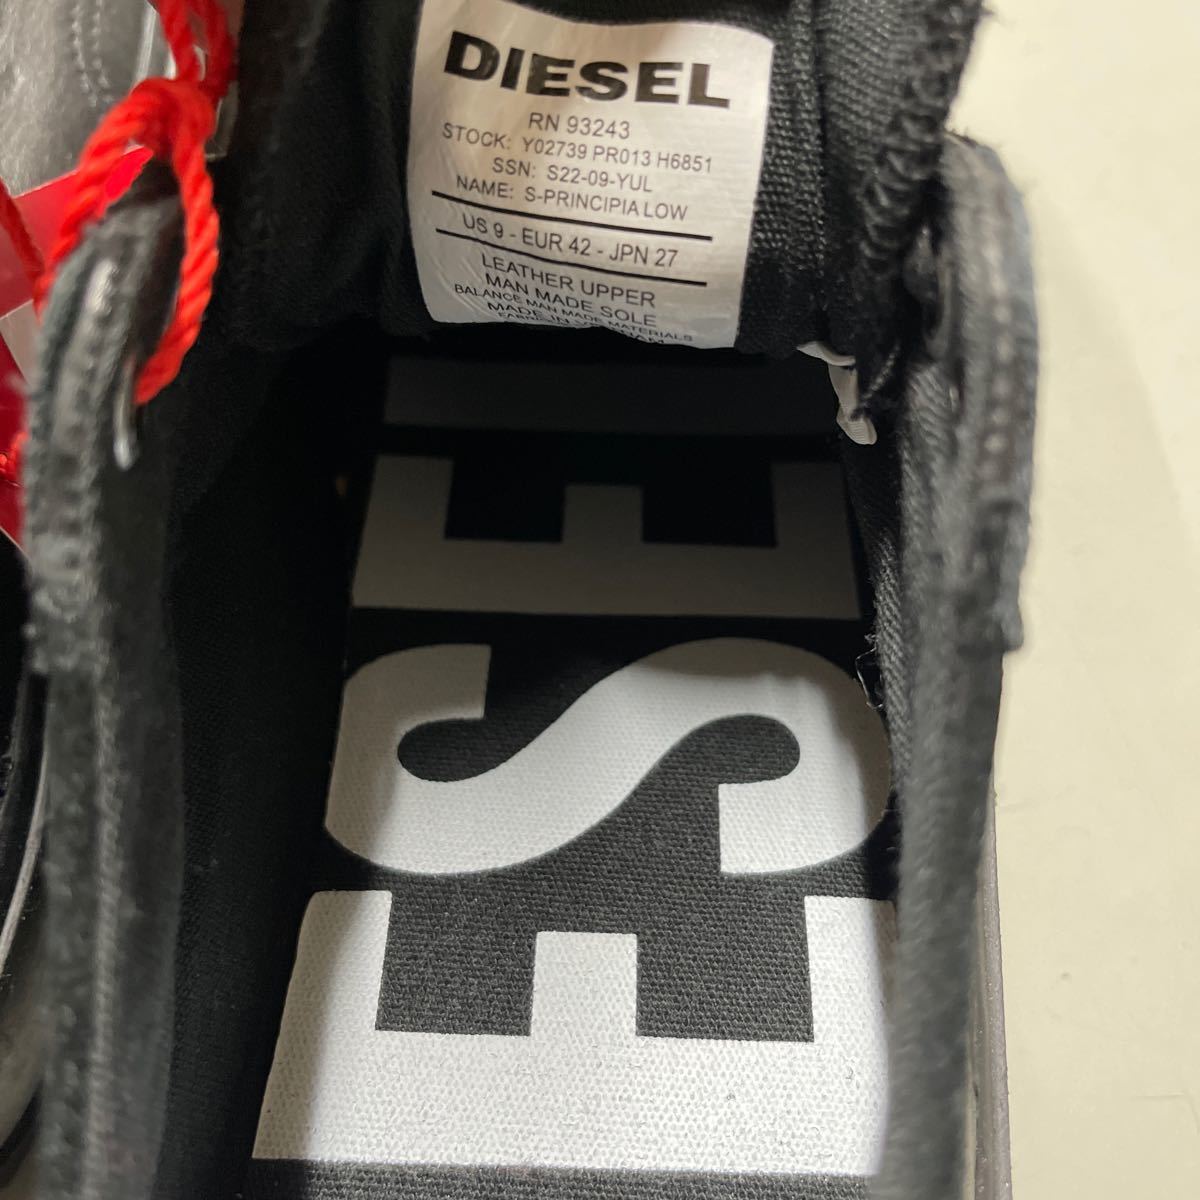  diesel sneakers 922 900 117 907 regular price 27000 ten thousand 41 27.0cm DIESEL diesel S-PRINCIPIA LOW leather suede black shoes unused 